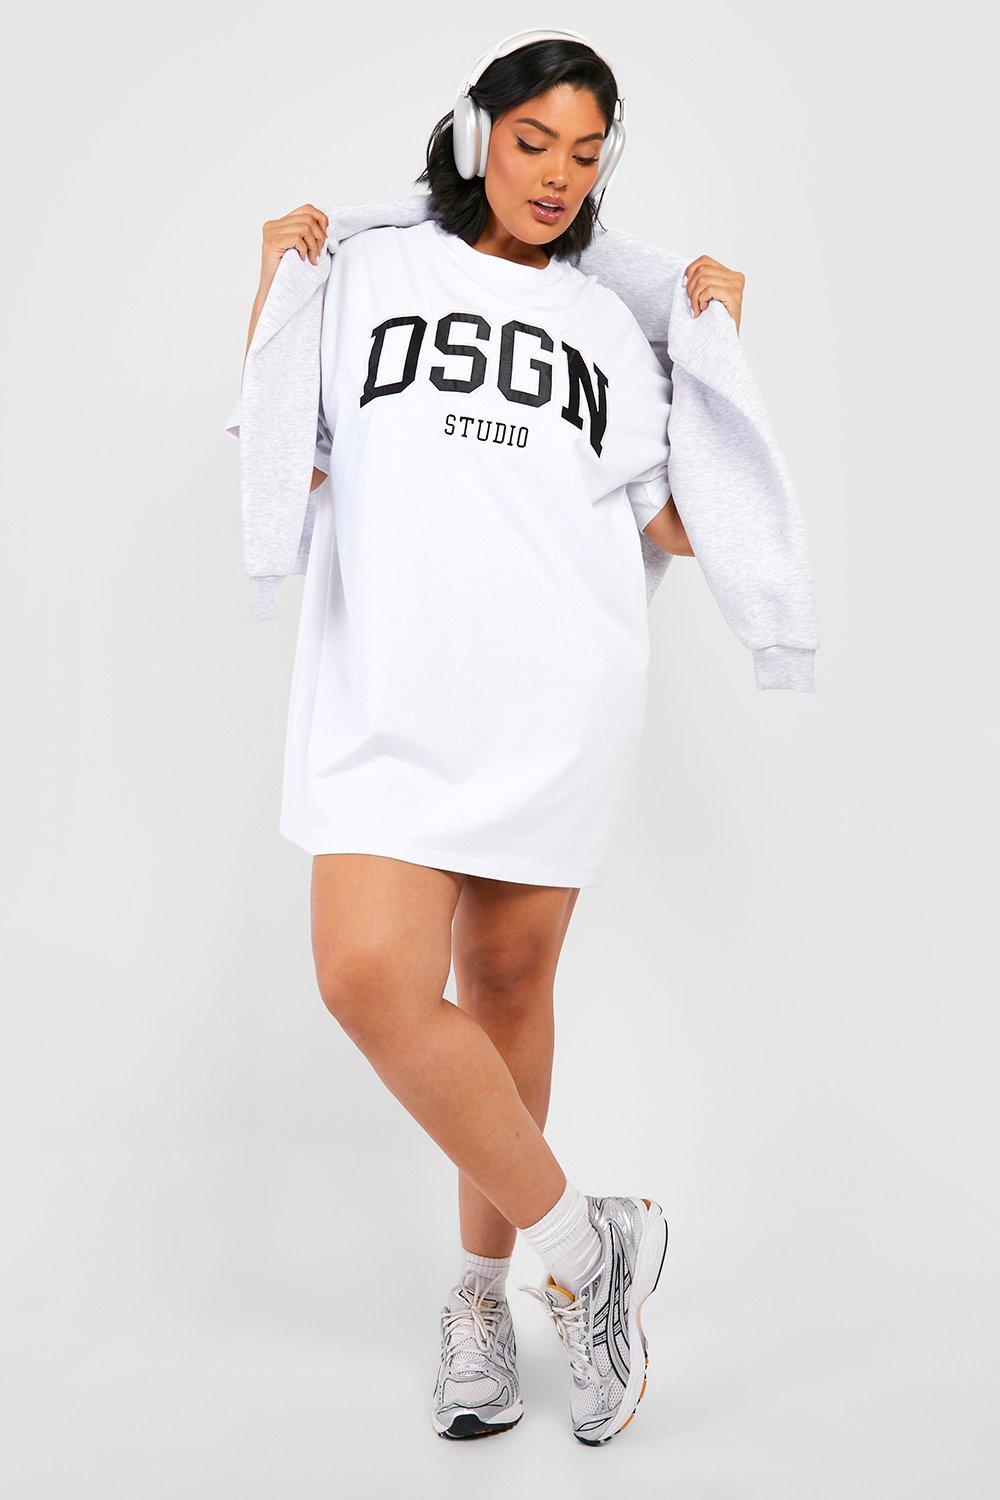 Plus Applique Dsgn Studio Oversized T-shirt Dress